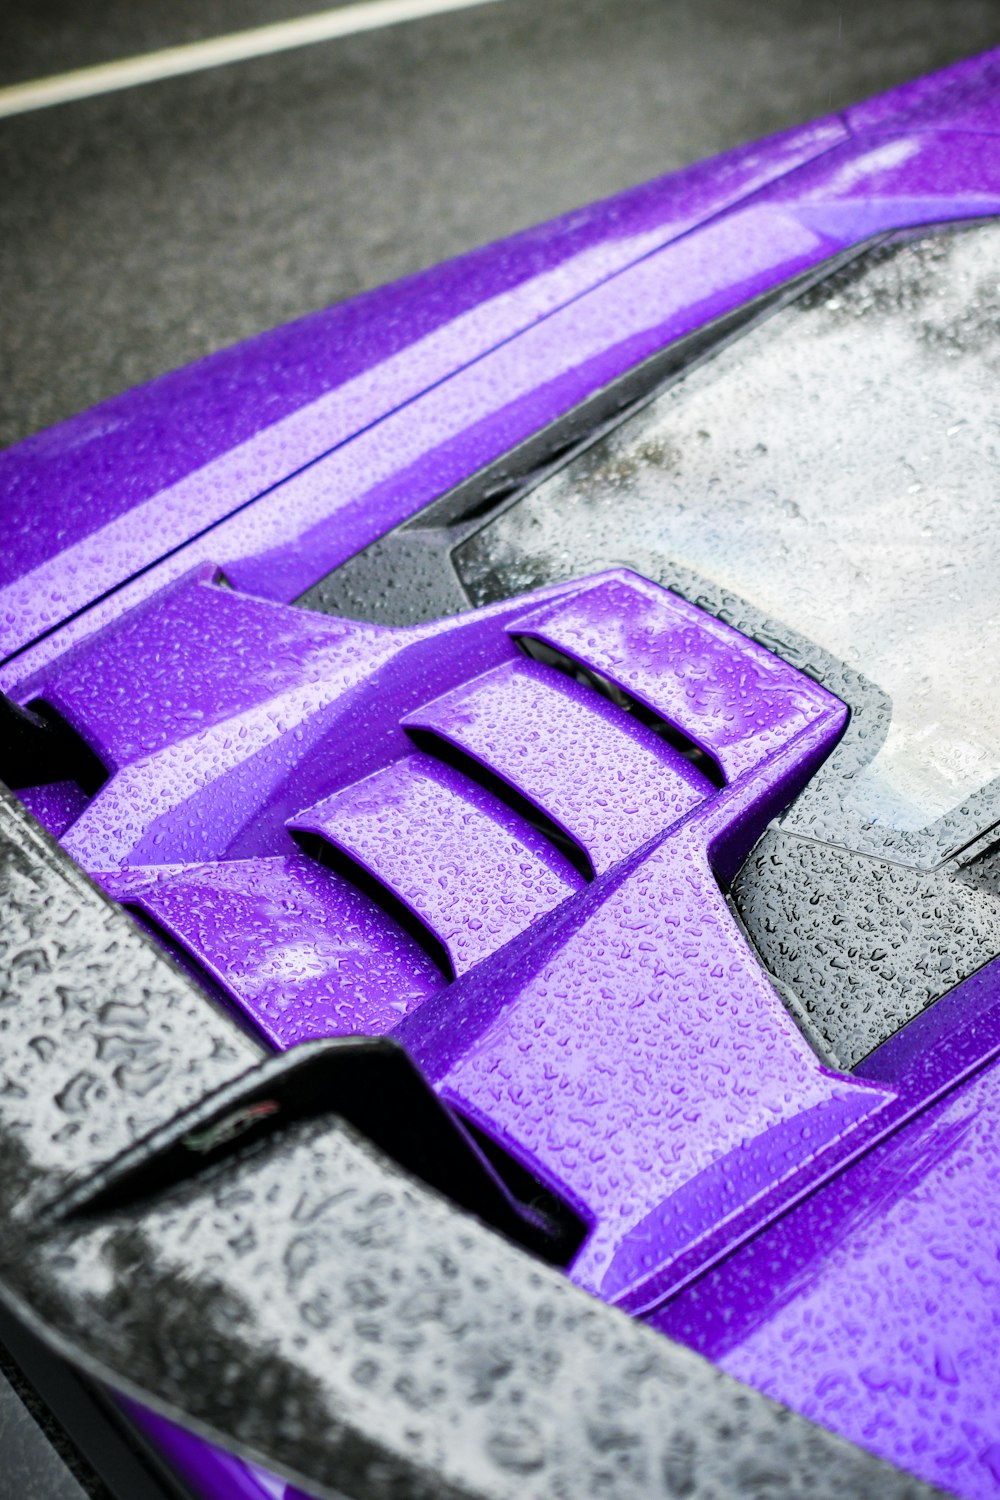 a close up of a purple sports car